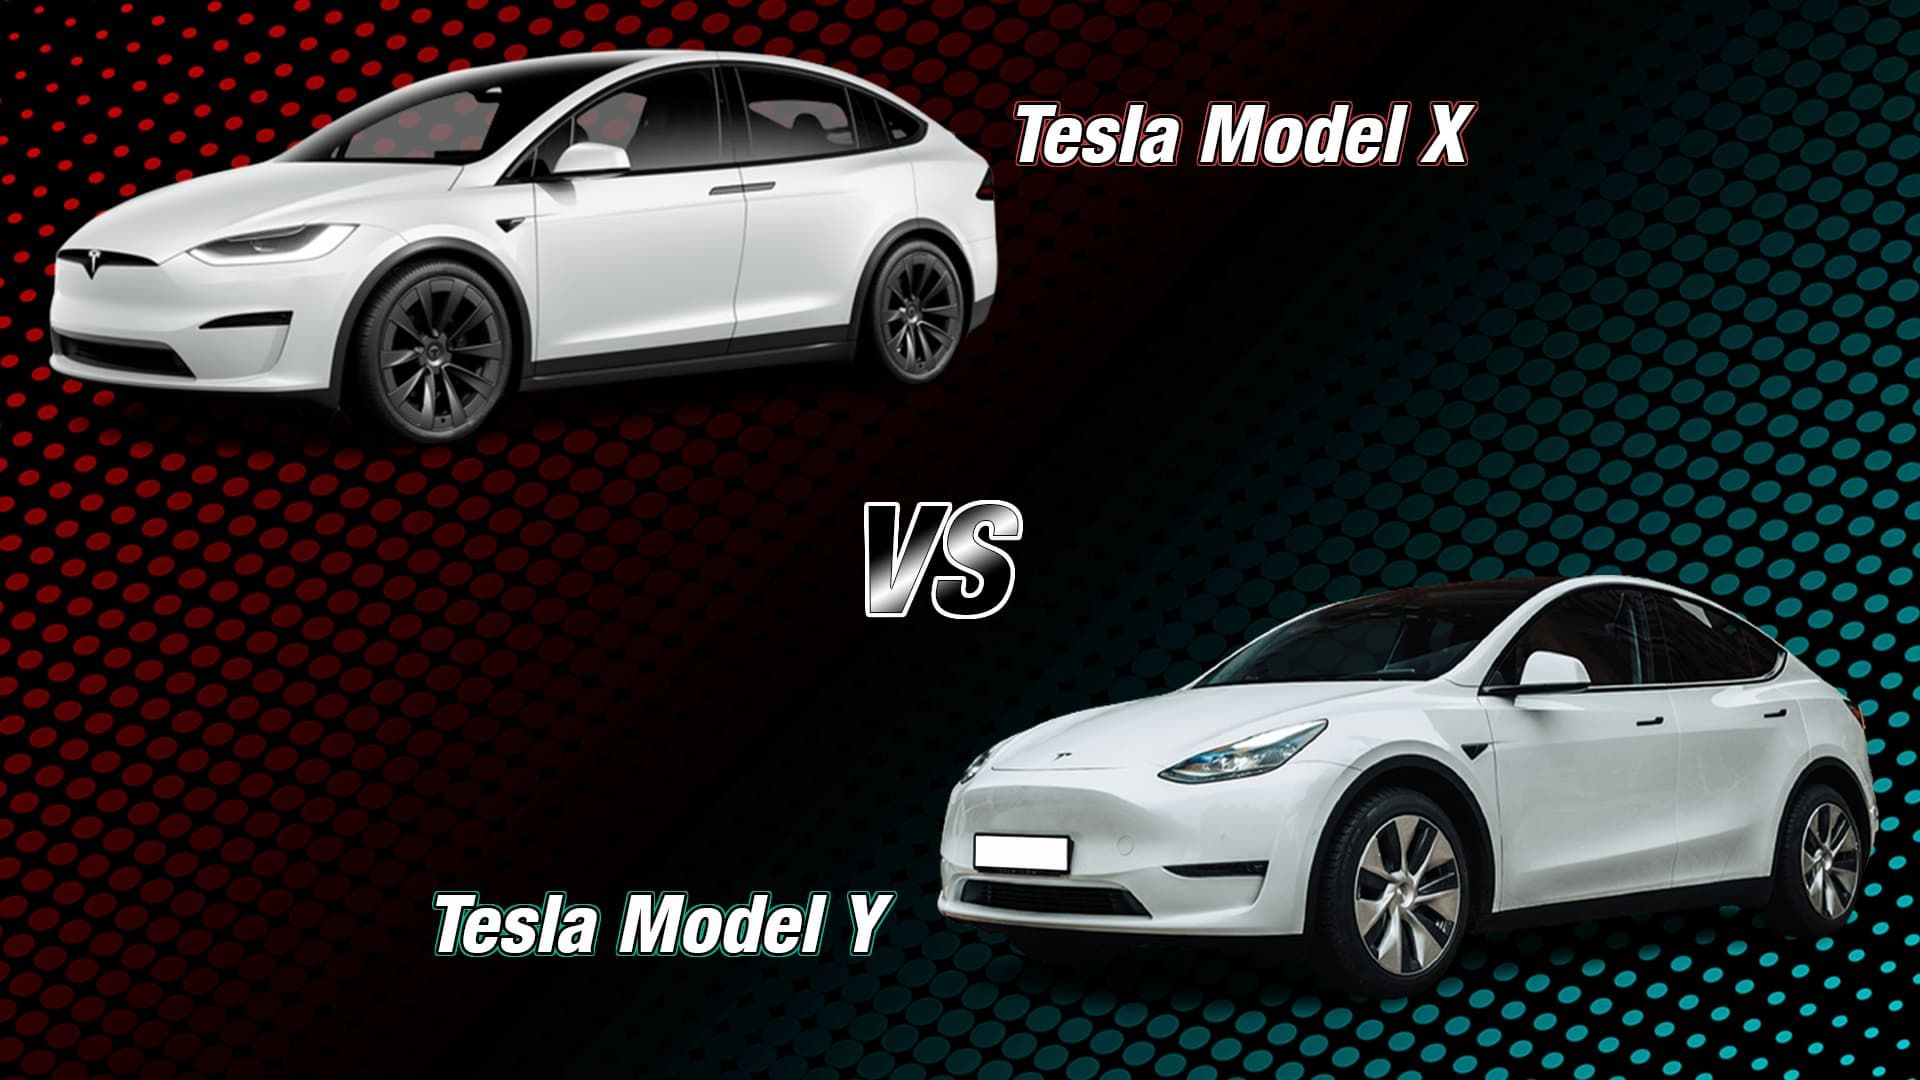 Tesla Model X vs Tesla Model Y angle